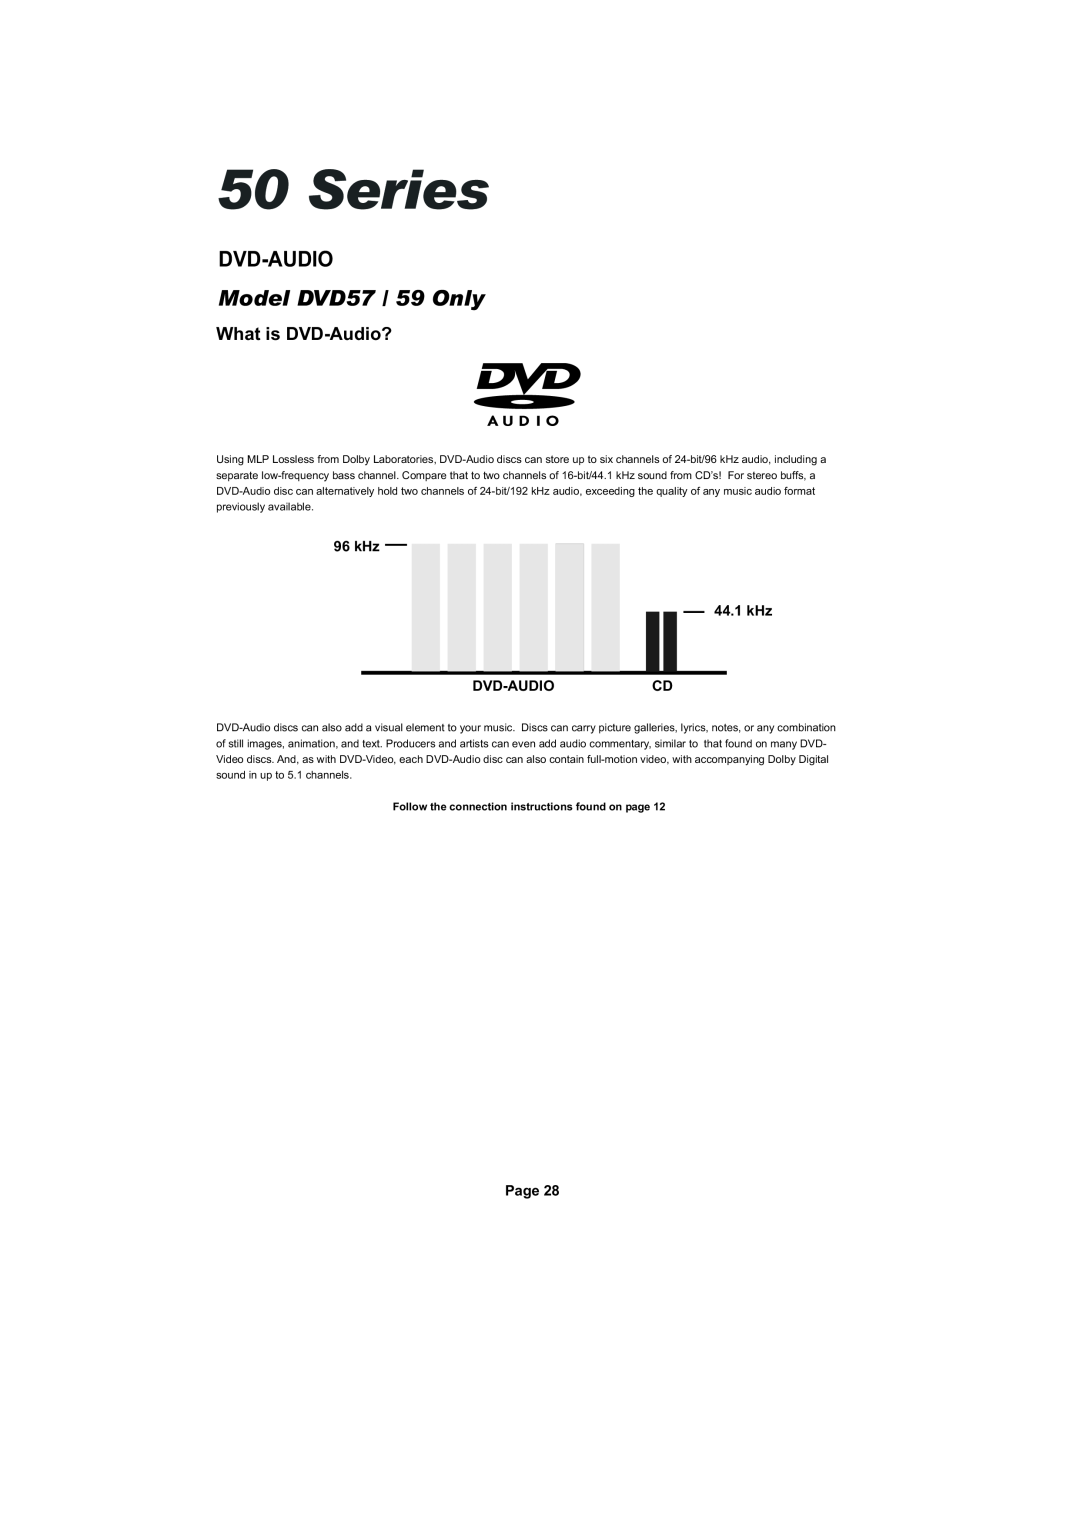 Cambridge Audio SERIES50 Dvd-Audio, What is DVD-Audio?, Series, Model DVD57 / 59 Only, kHz 44.1 kHz DVD-AUDIOCD, Page 